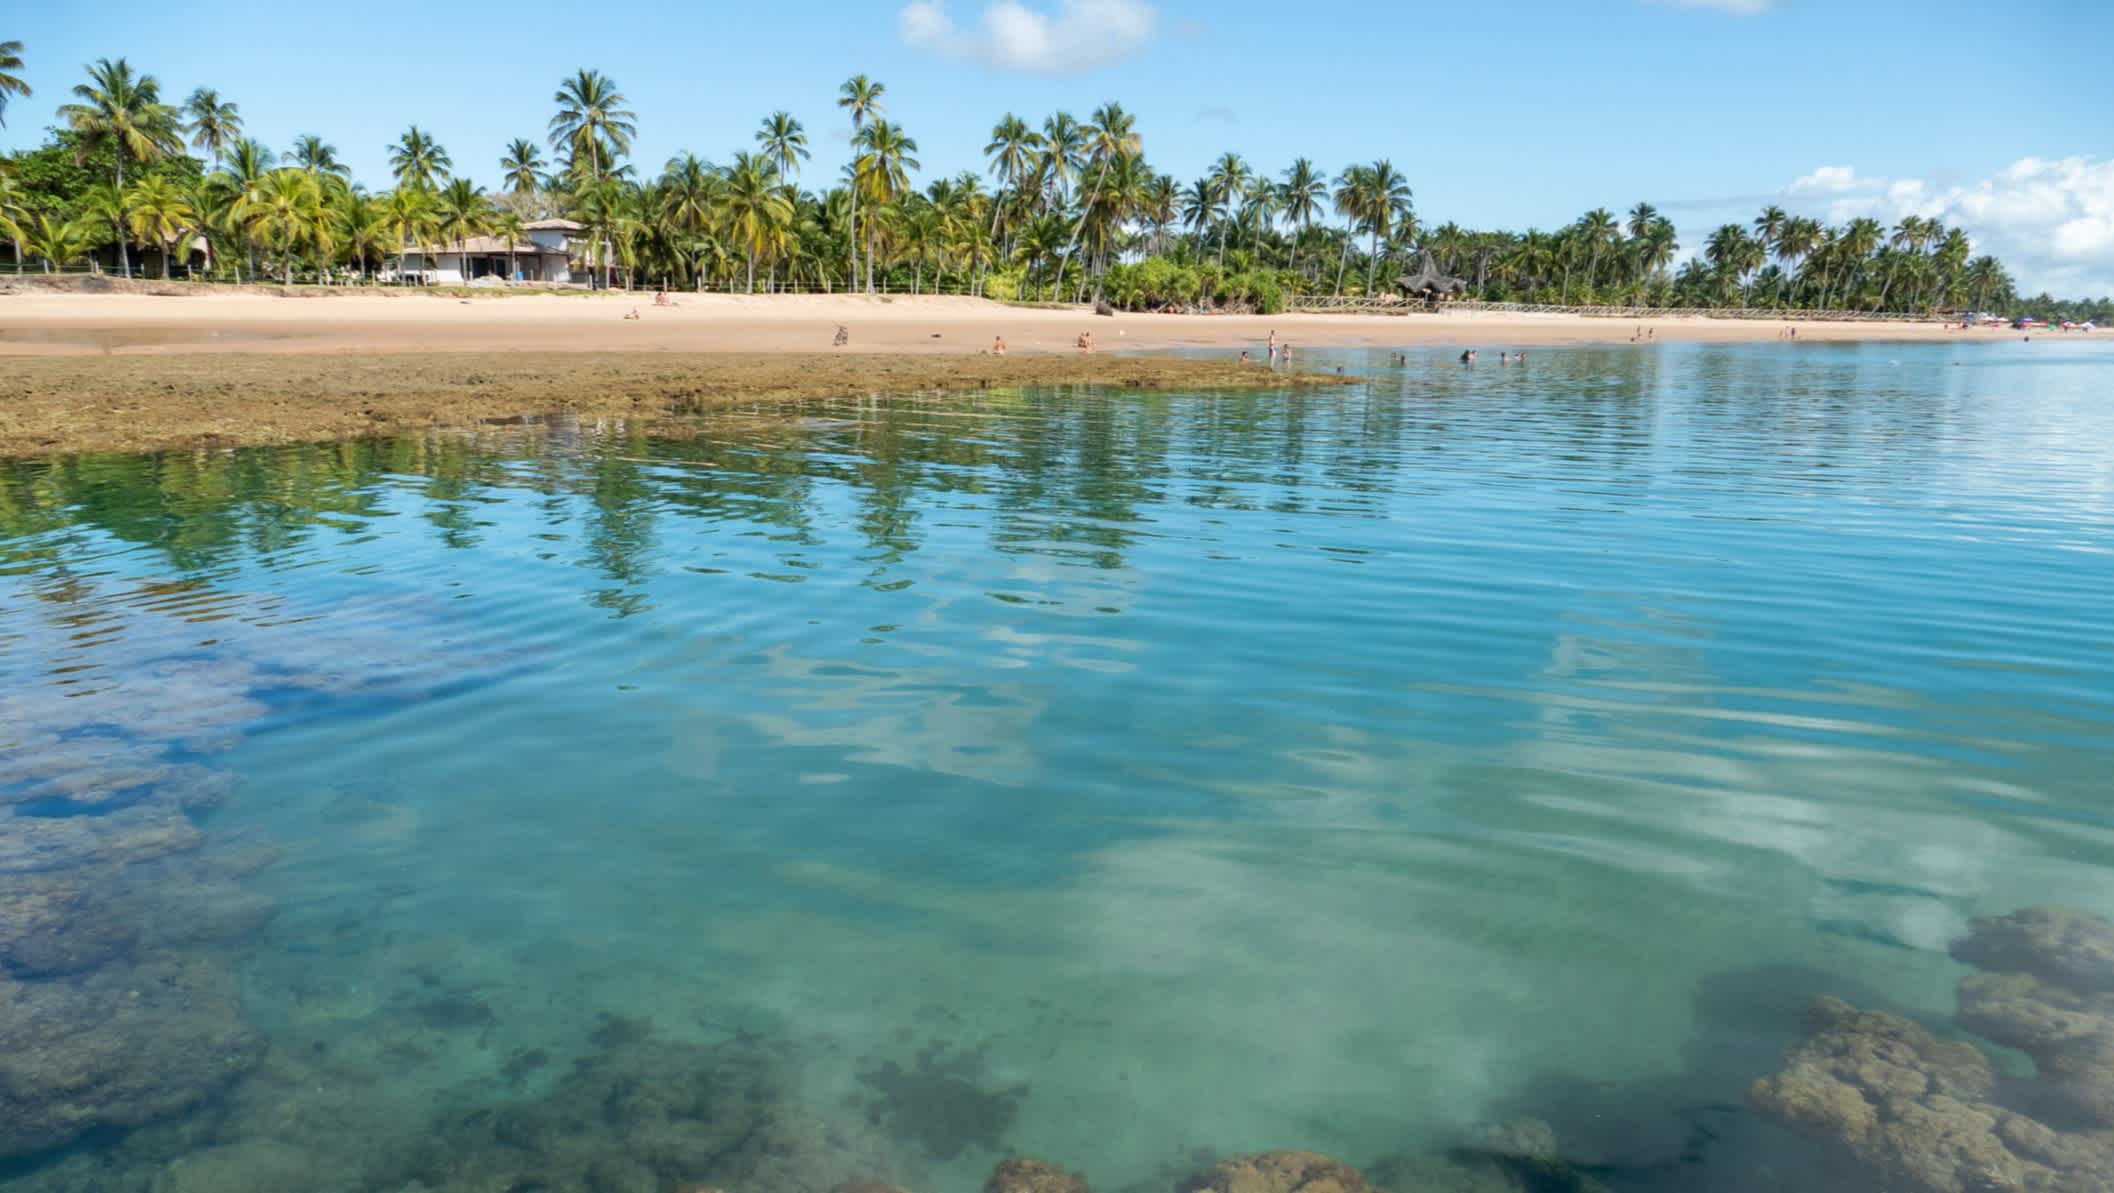 Reflet des palmiers dans les eaux cristallines de la plage de Taipus de Fora, Marau, Brésil